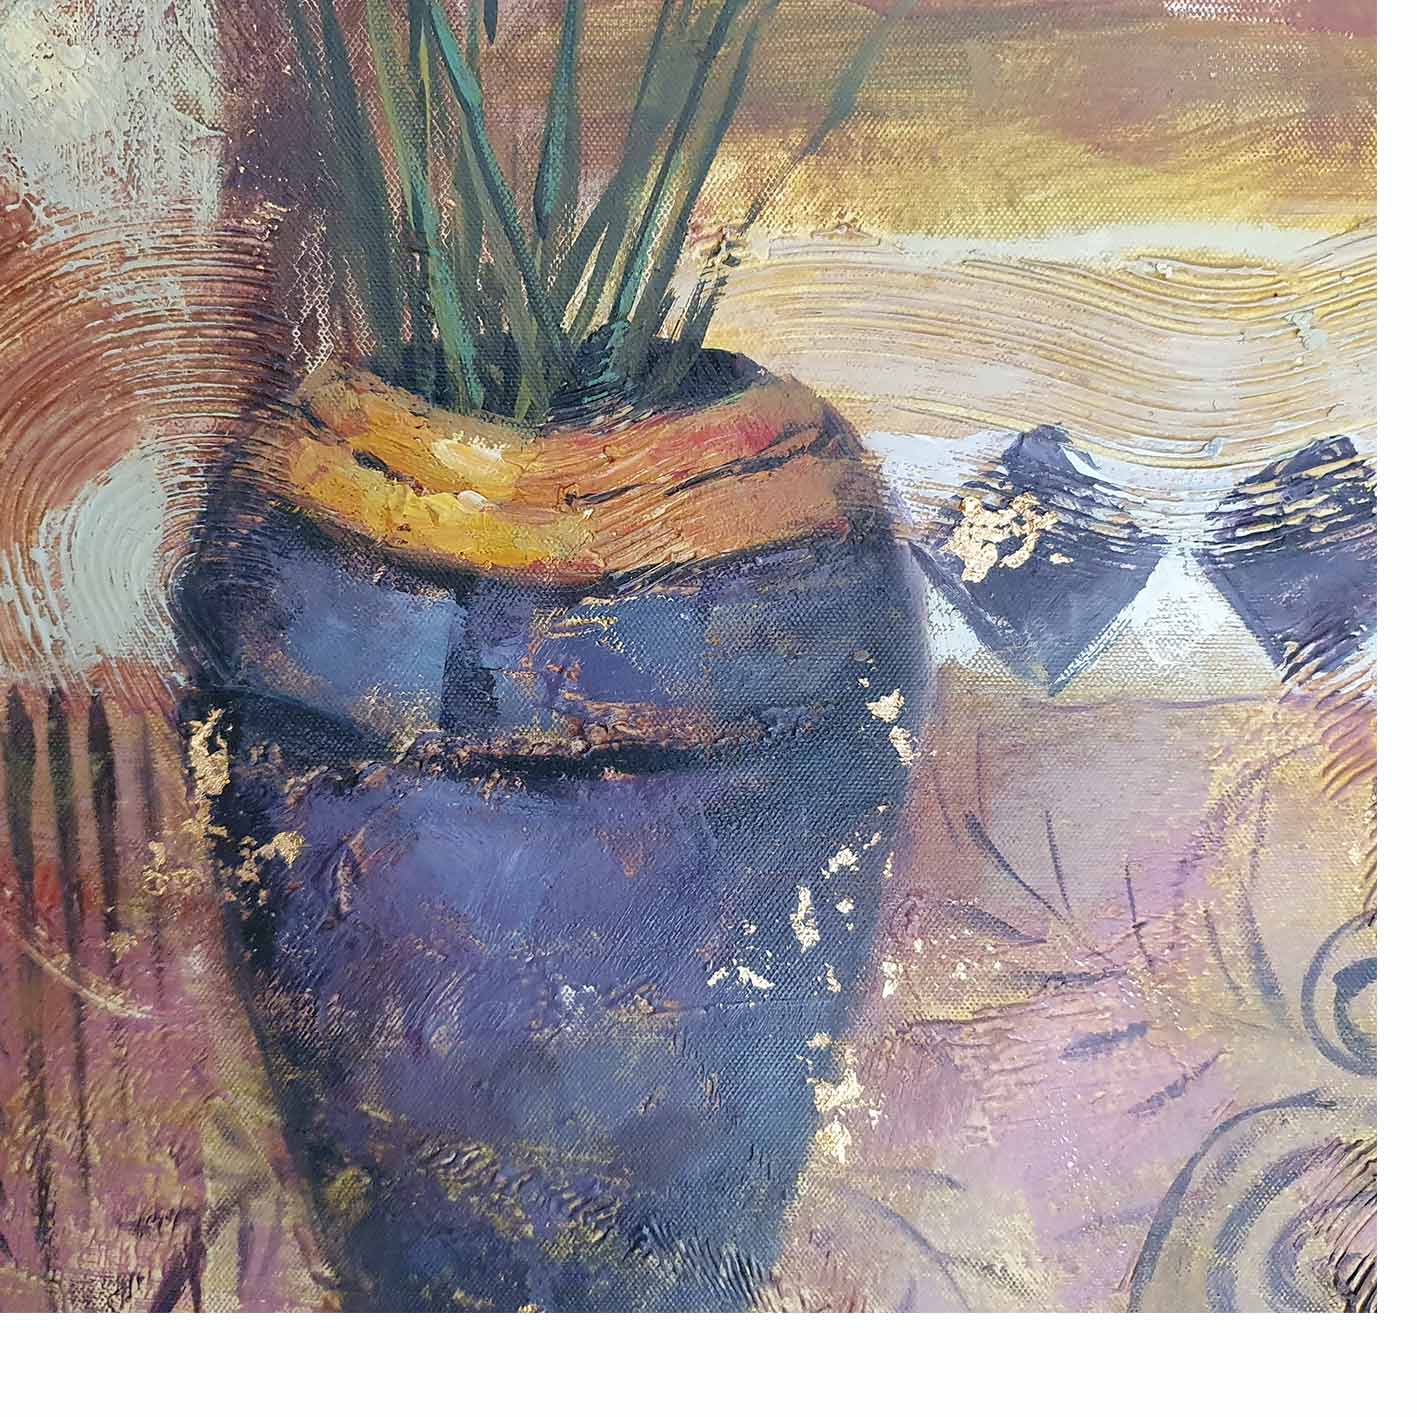 Blumendekor-Diptychon-Gemälde 50x60 cm [2 Stück]